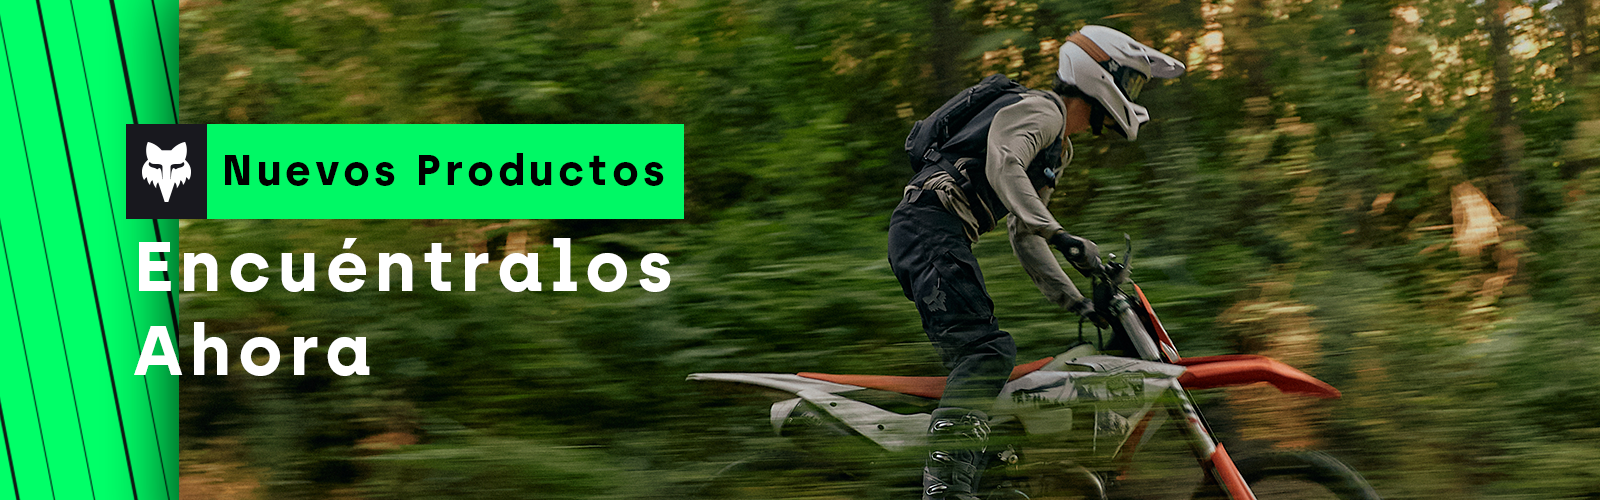 Fox Racing Chile - Te presentamos la nueva temporada 𝗙𝗔𝗟𝗟 𝟮𝟬𝟮𝟬  𝗠𝗧𝗕 🤘🏻🦊⁠ ⠀⁠ Equípate de pies a cabeza con lo mejor de nuestros  productos de bicicleta 💥 ⠀⁠ Regálate felicidad 🤩